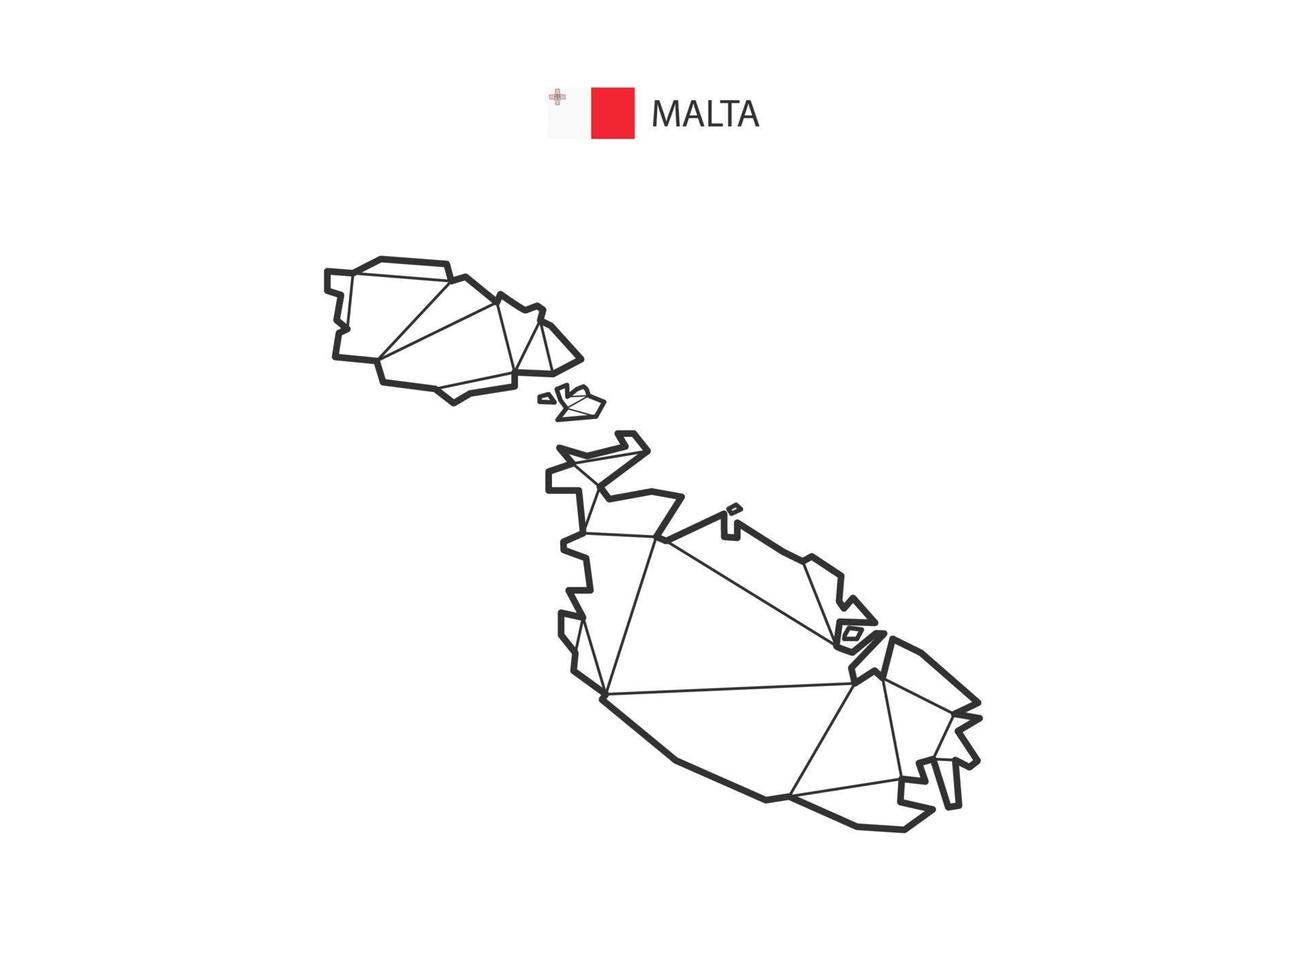 mosaico triángulos mapa estilo de malta aislado sobre un fondo blanco. diseño abstracto para vectores. vector